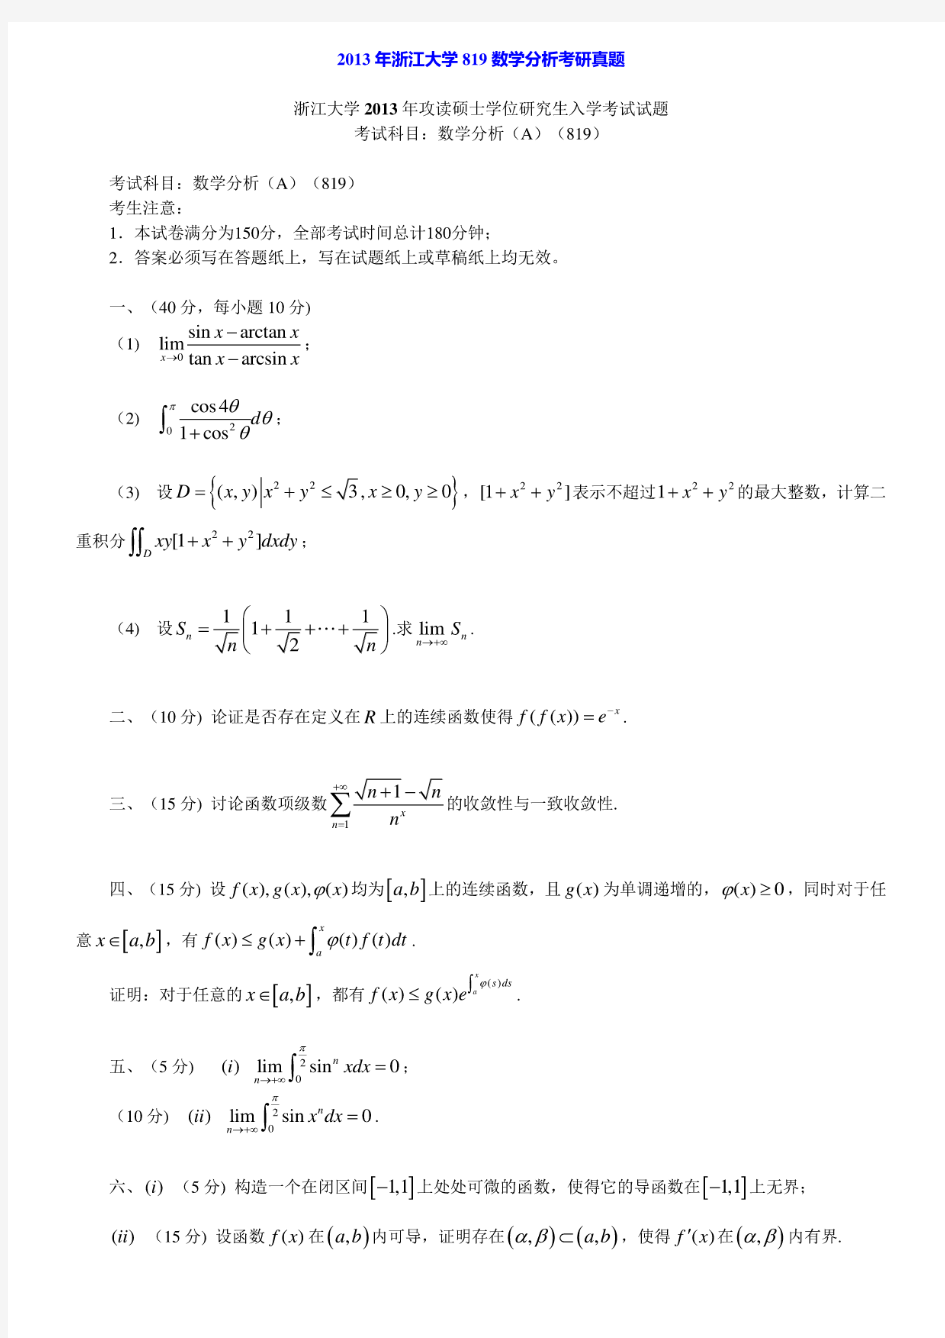 浙江大学《819数学分析》历年考研真题汇编(含部分答案)